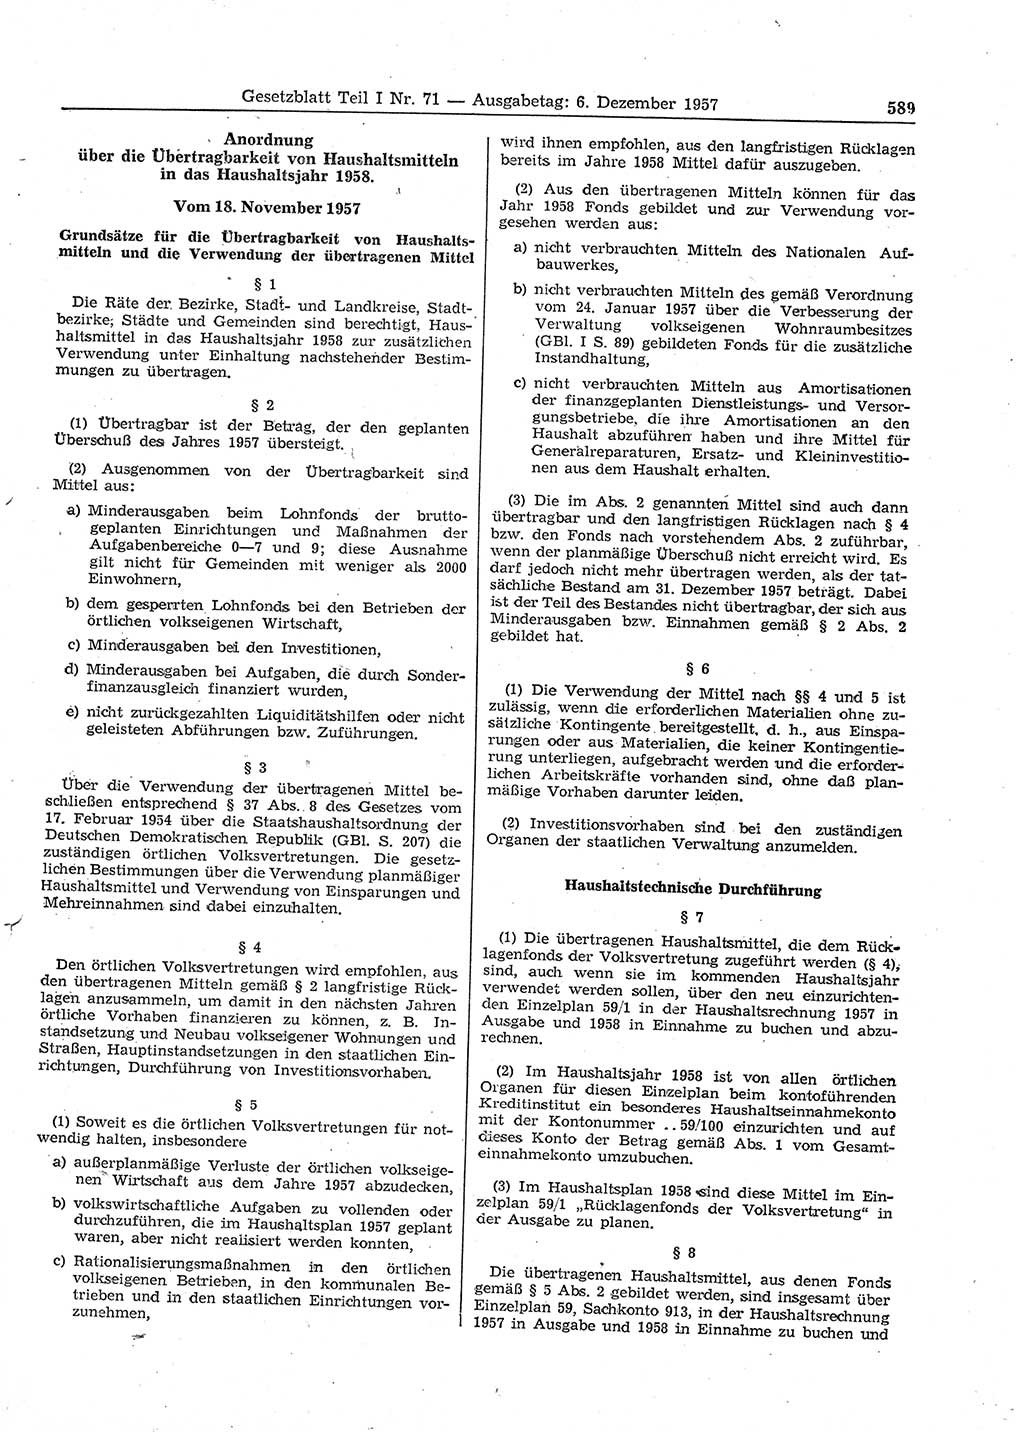 Gesetzblatt (GBl.) der Deutschen Demokratischen Republik (DDR) Teil Ⅰ 1957, Seite 589 (GBl. DDR Ⅰ 1957, S. 589)